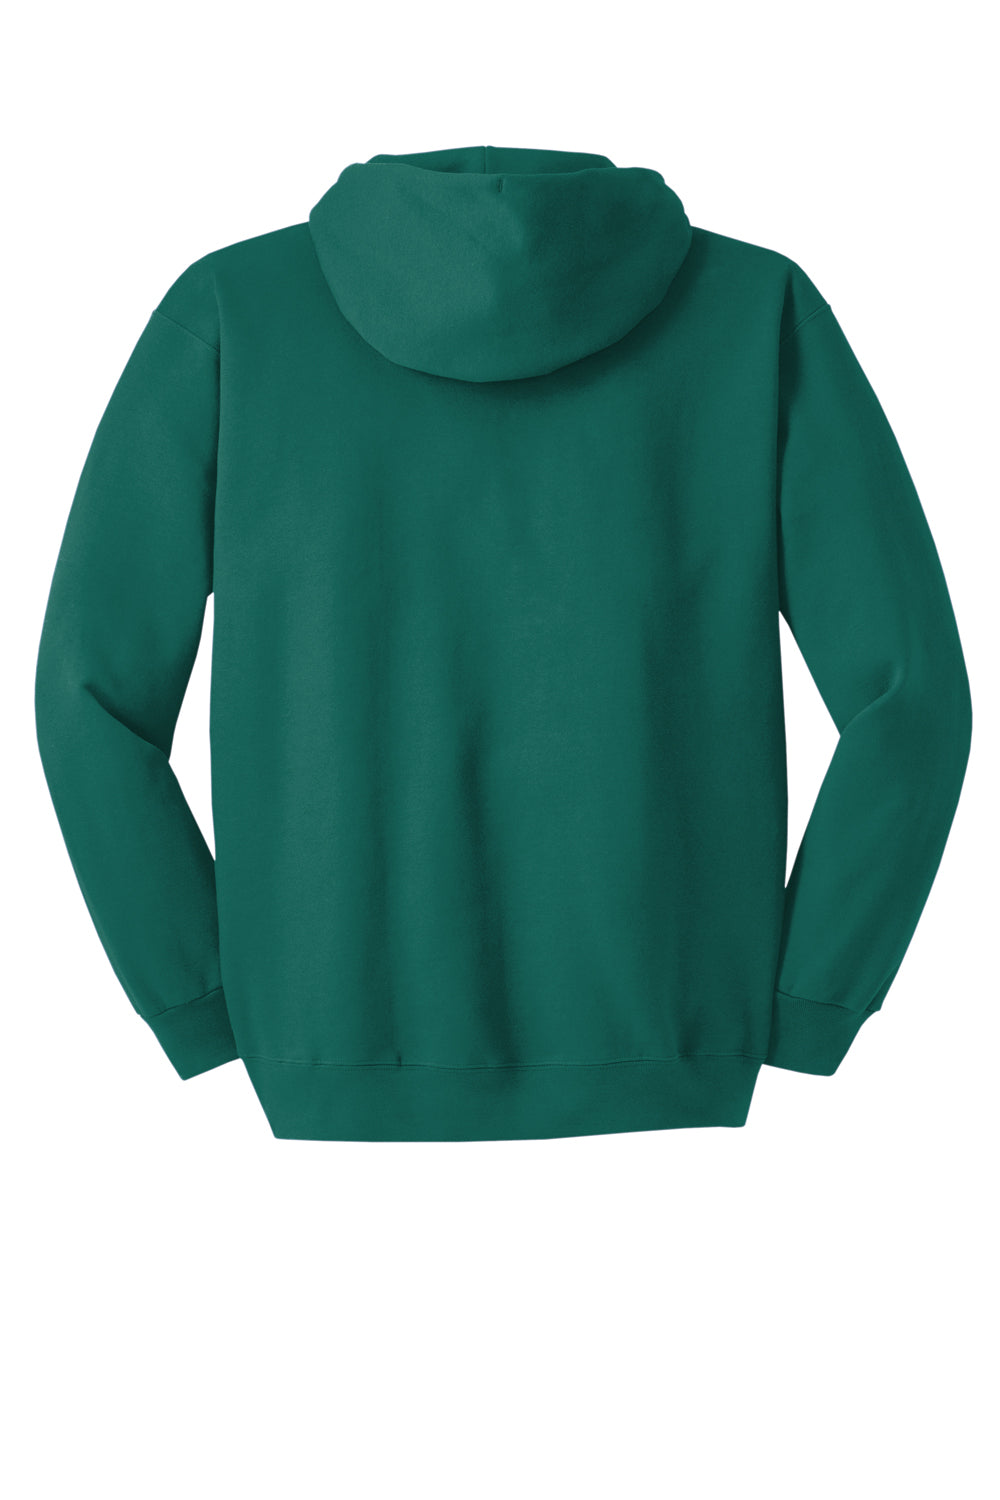 Hanes Mens Ultimate Cotton PrintPro XP Hooded Sweatshirt Hoodie Cactus Green Flat Back